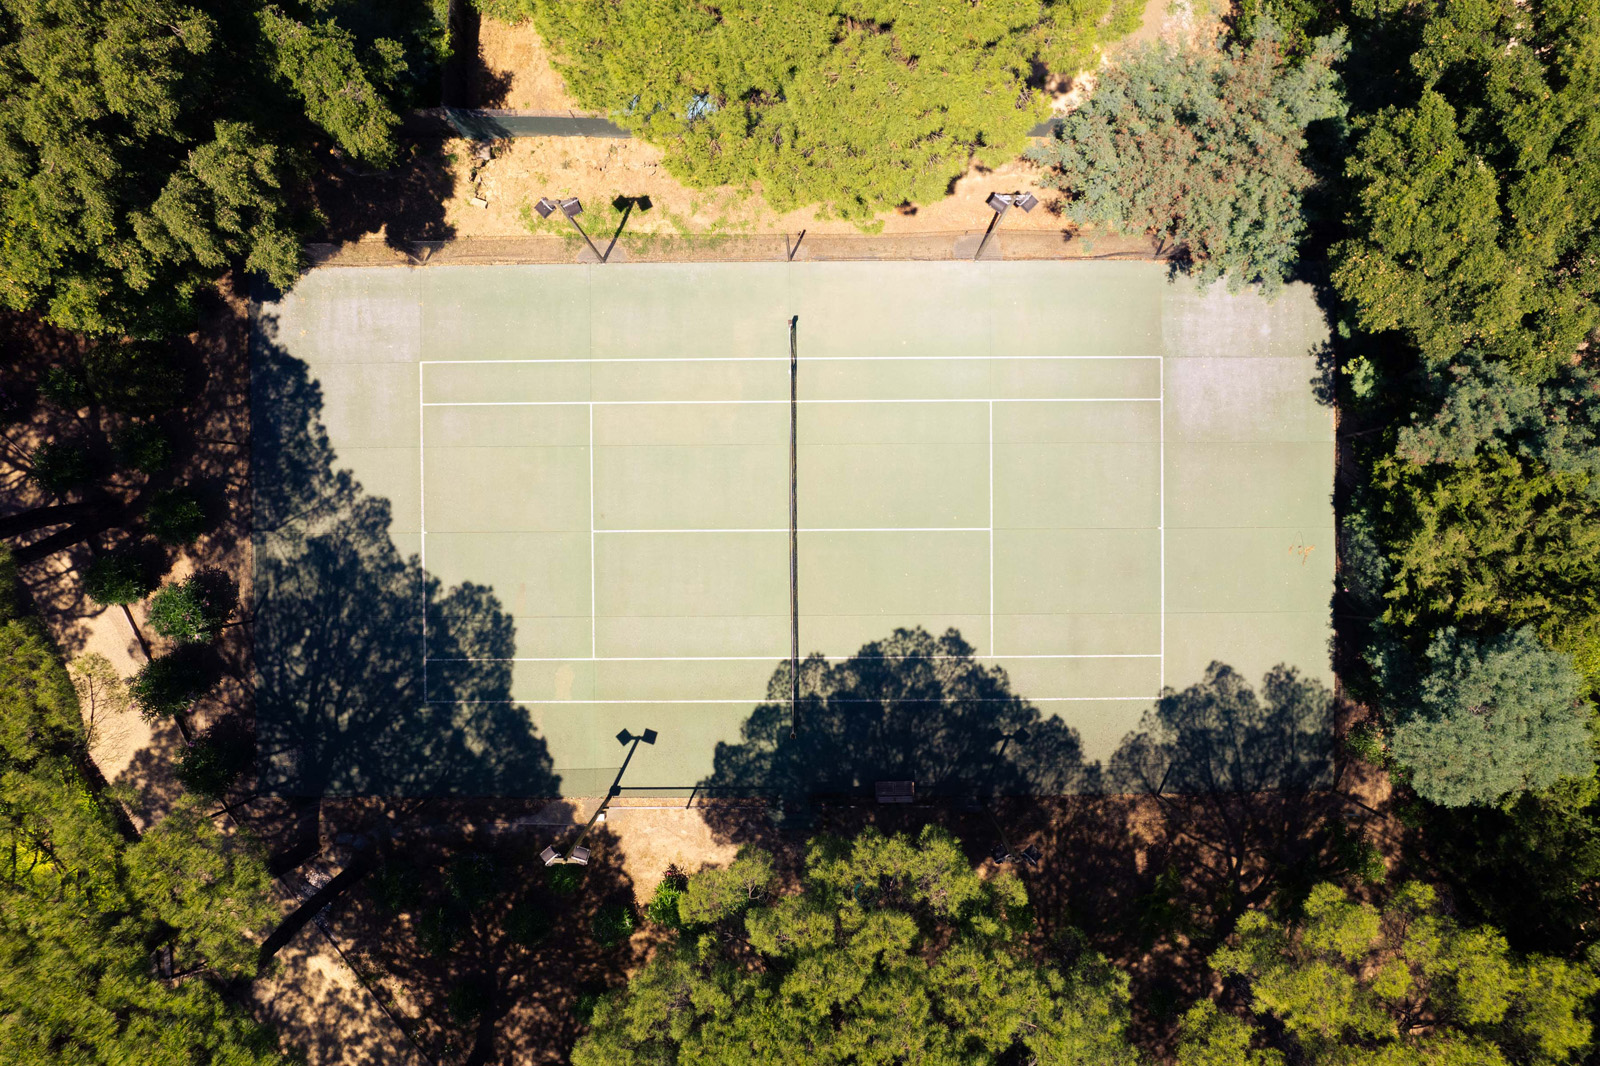 Privé tennisbaan